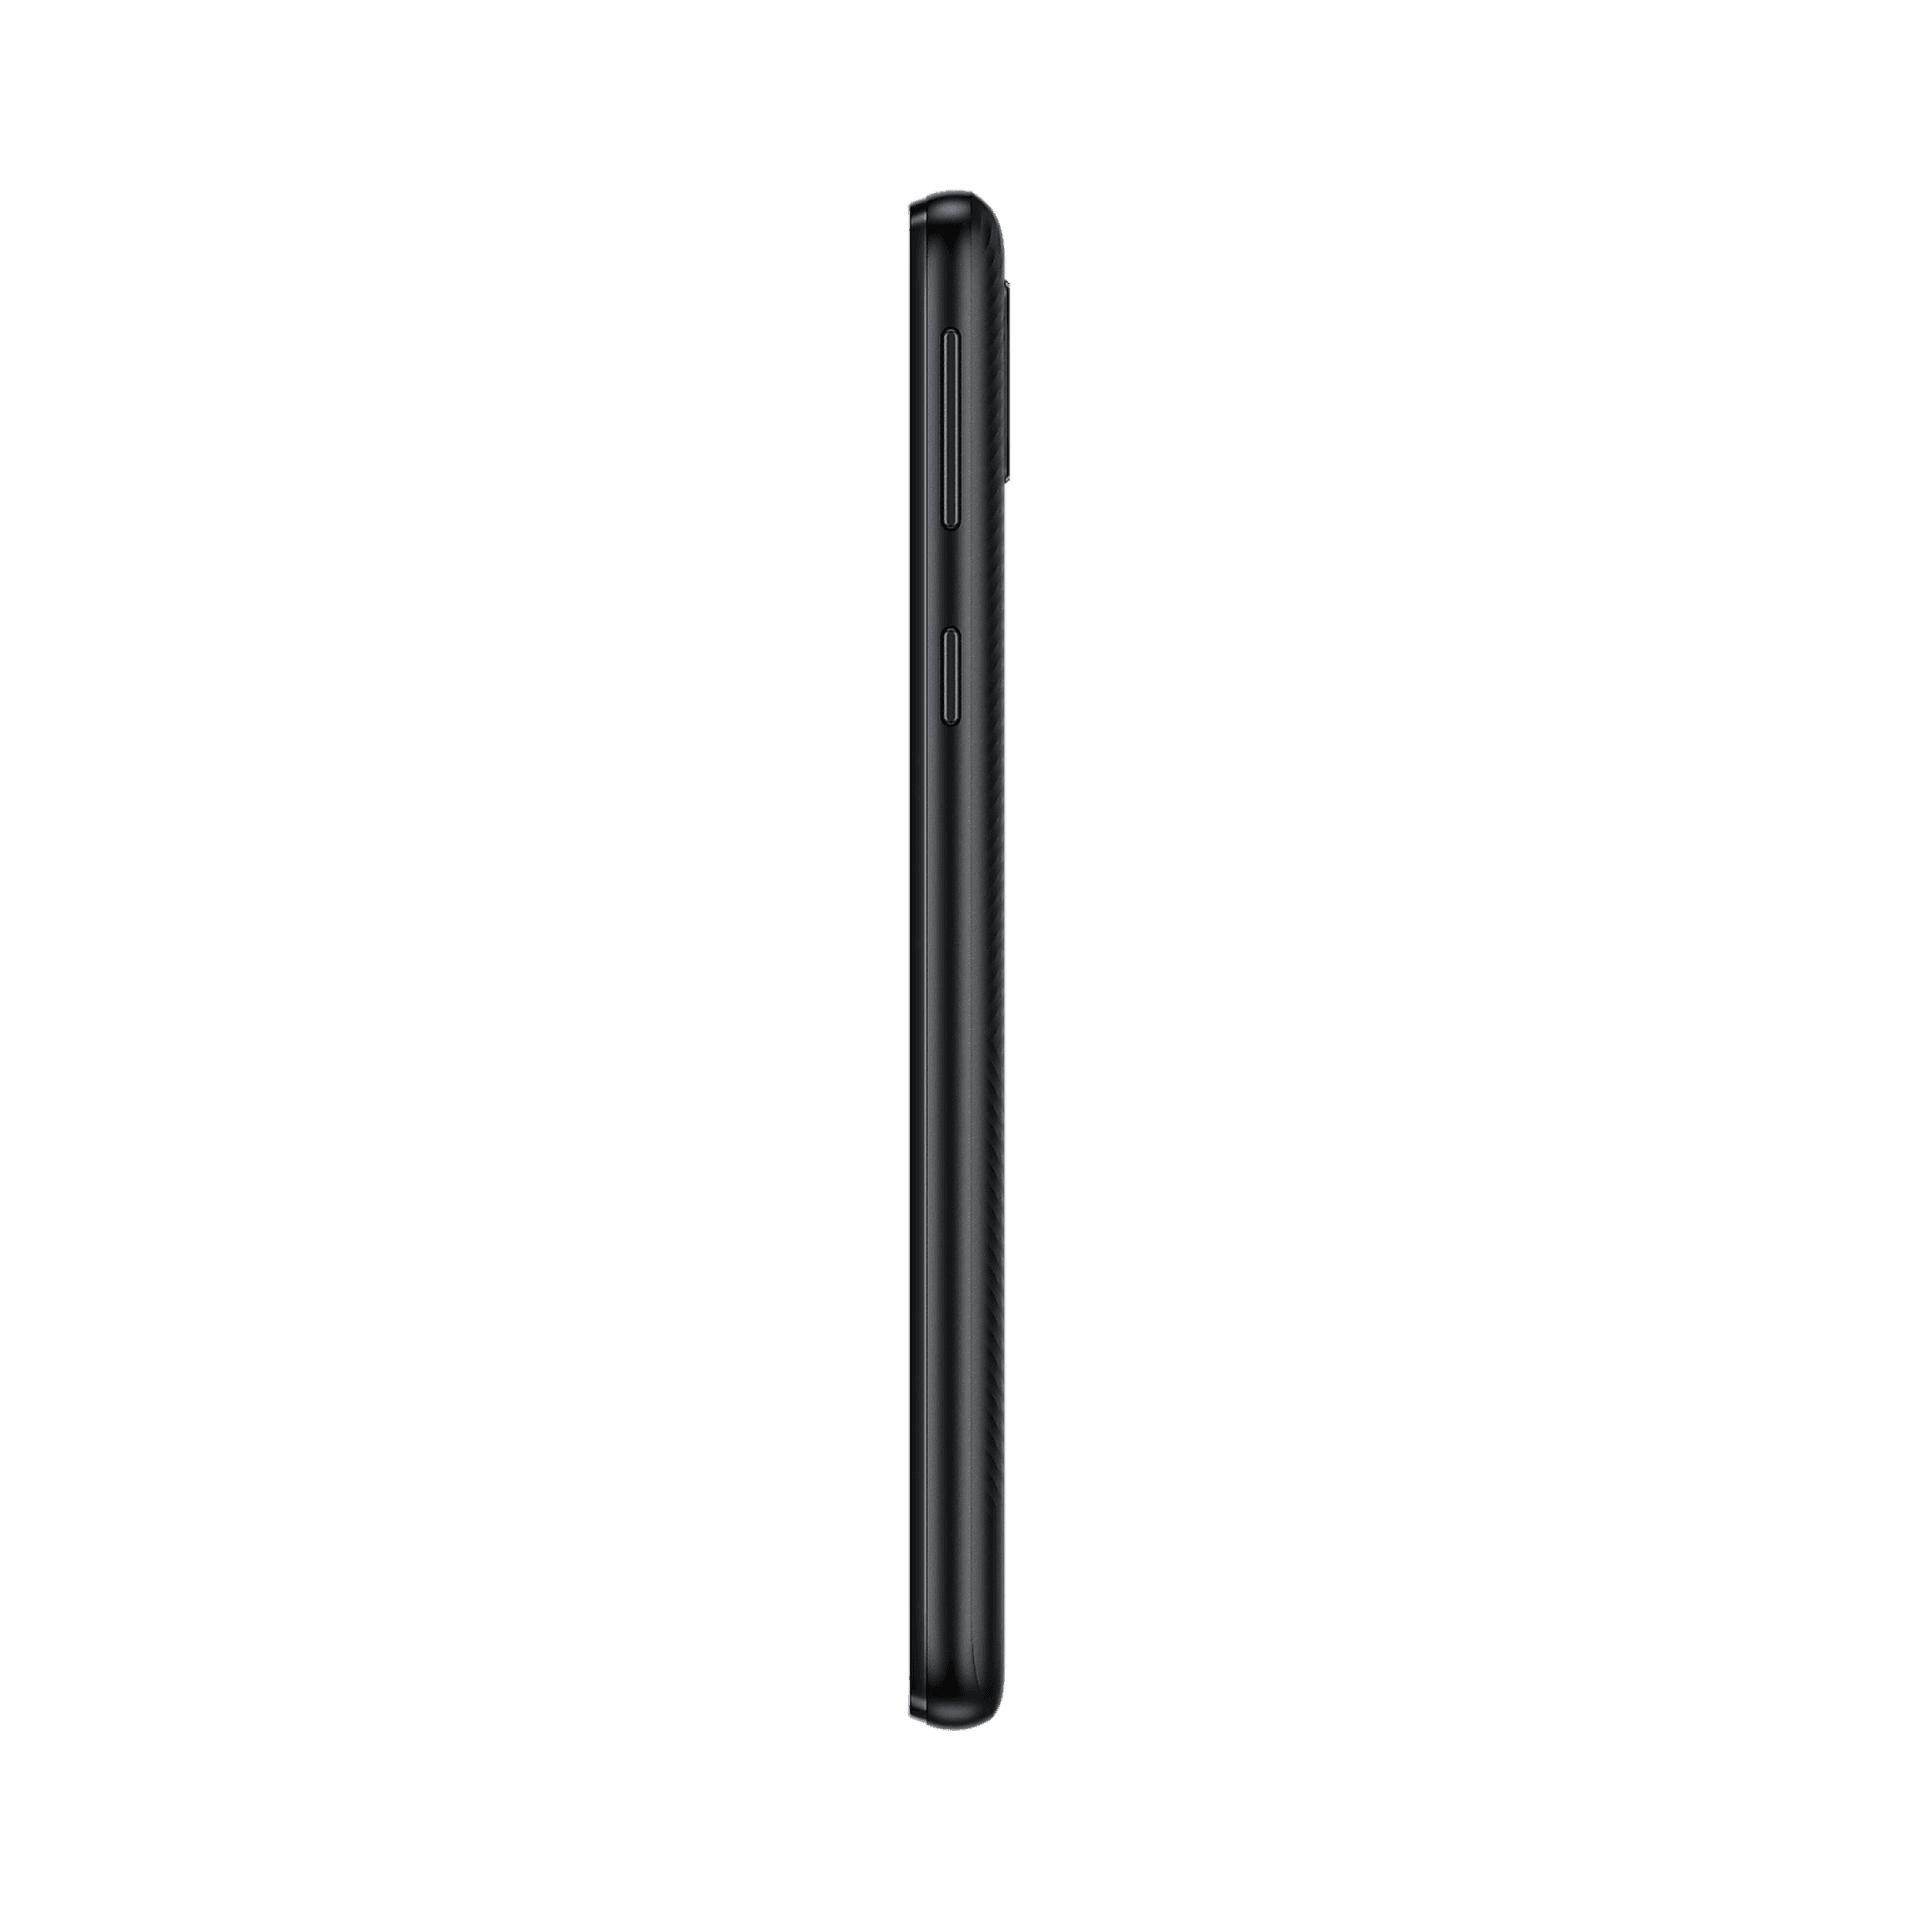 Samsung Galaxy A01 Core - 16 GB - Siyah